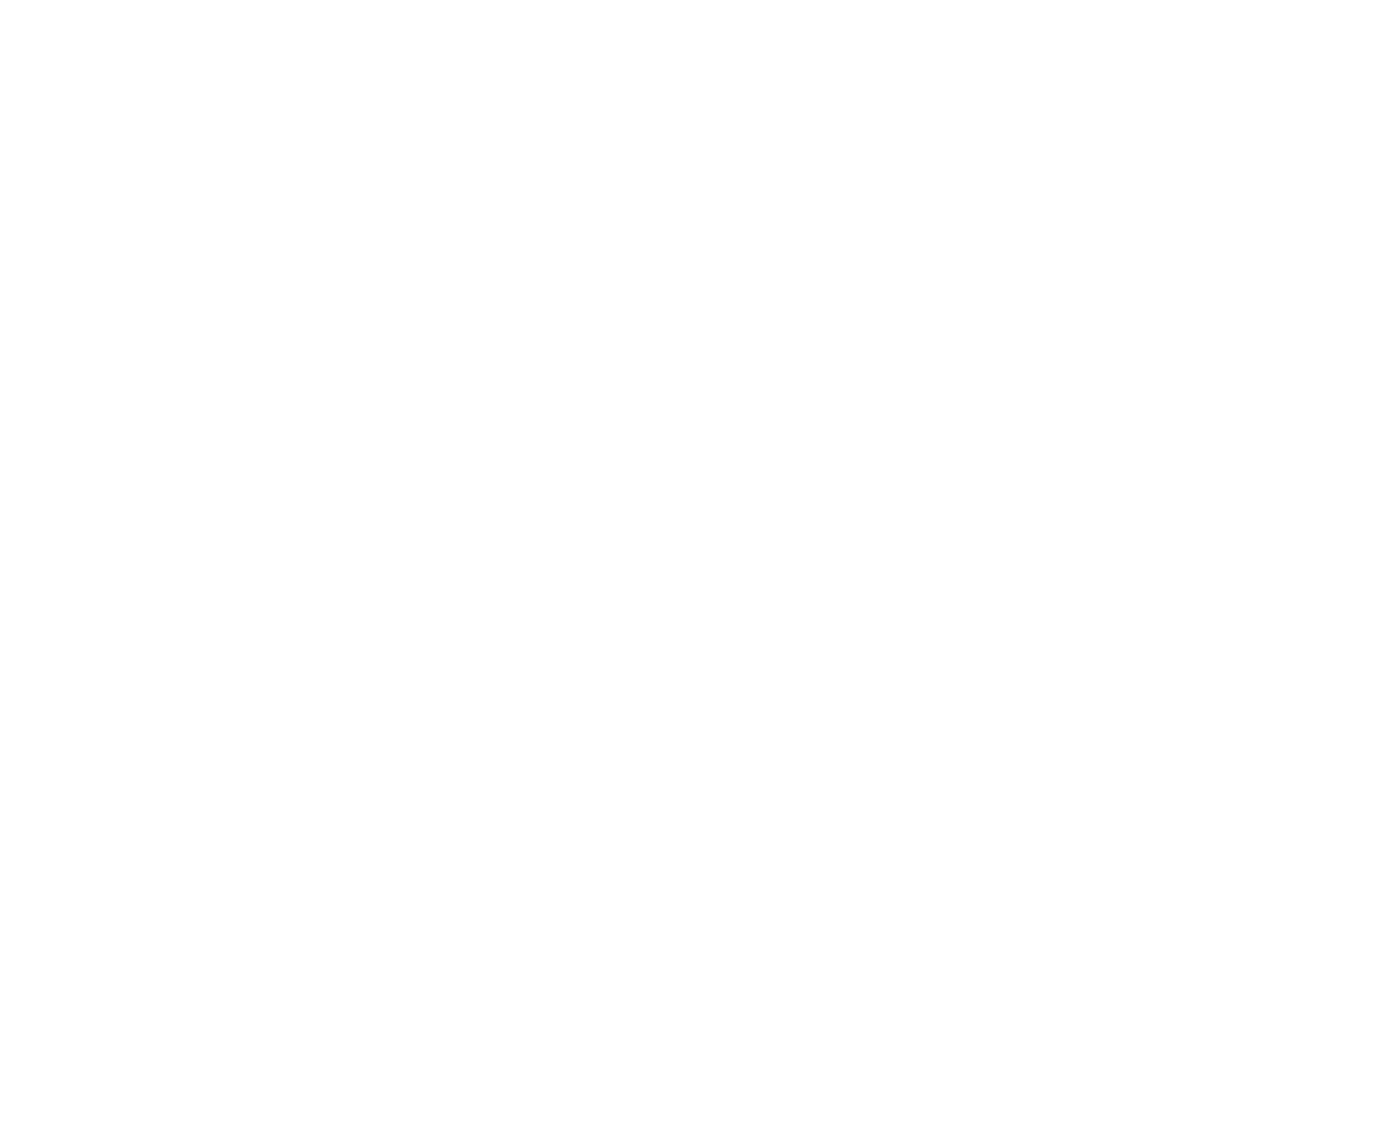 SOS Logistics